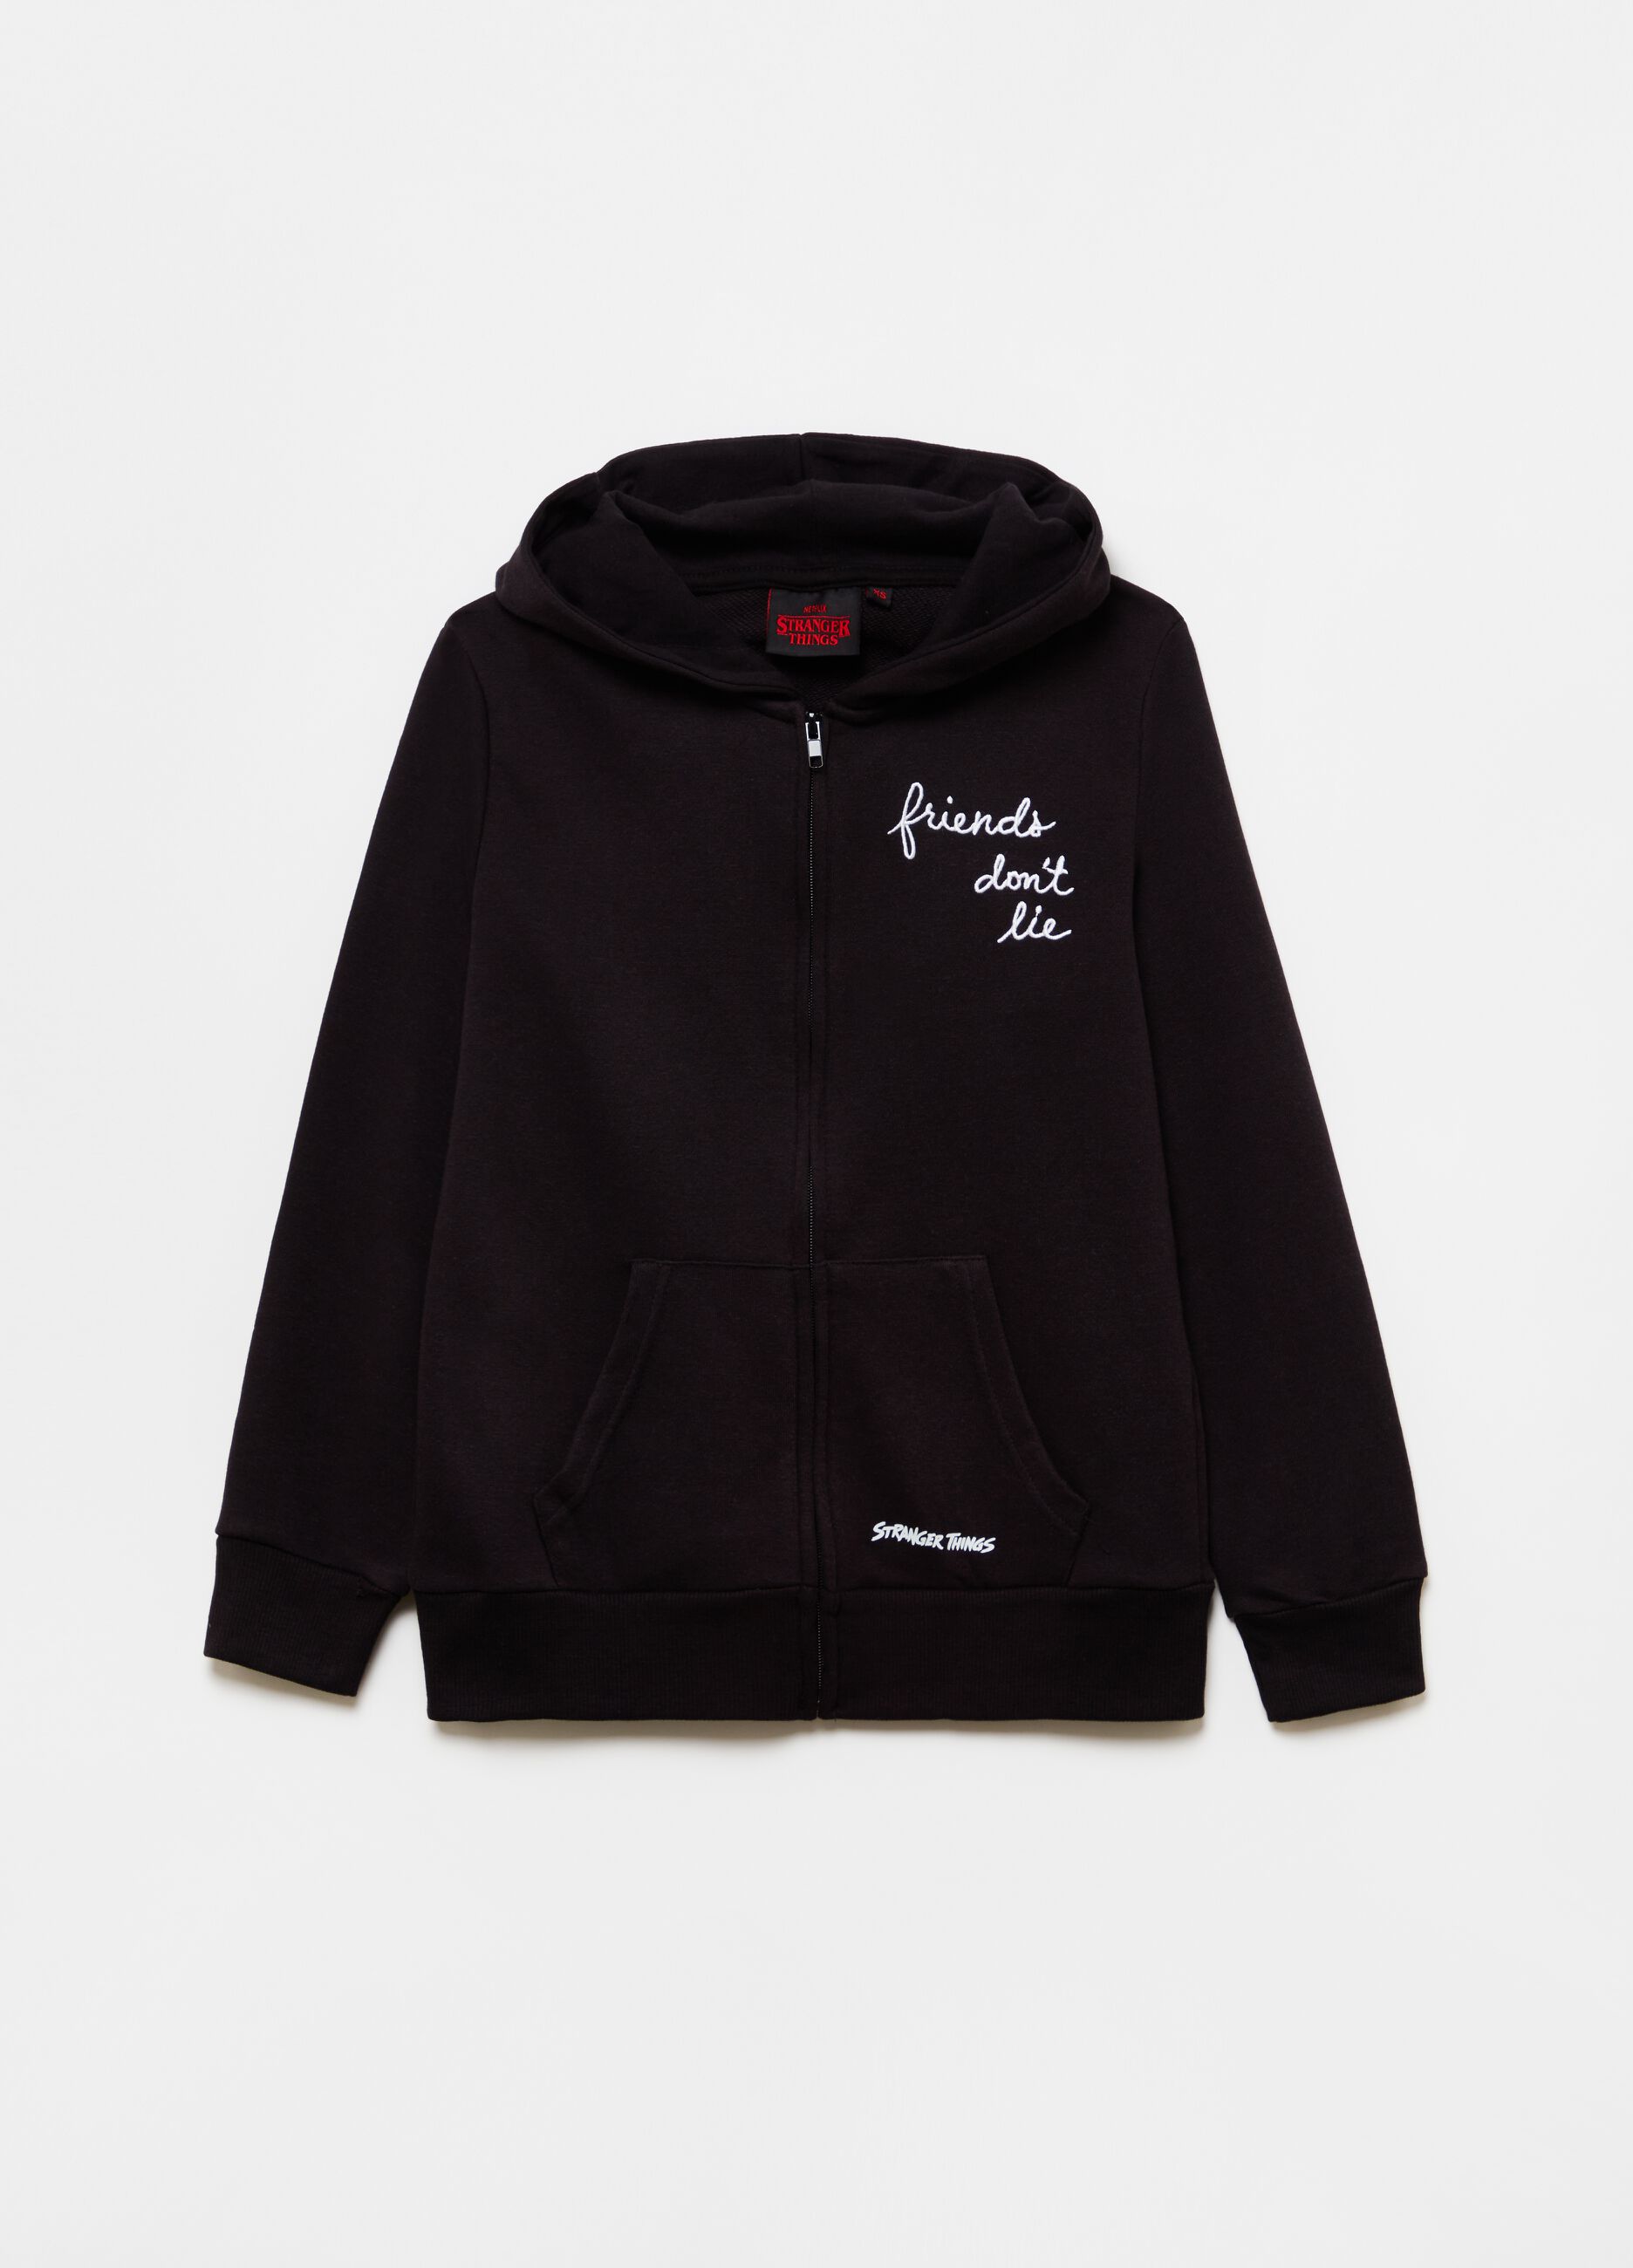 Full-zip sweatshirt with hood and print